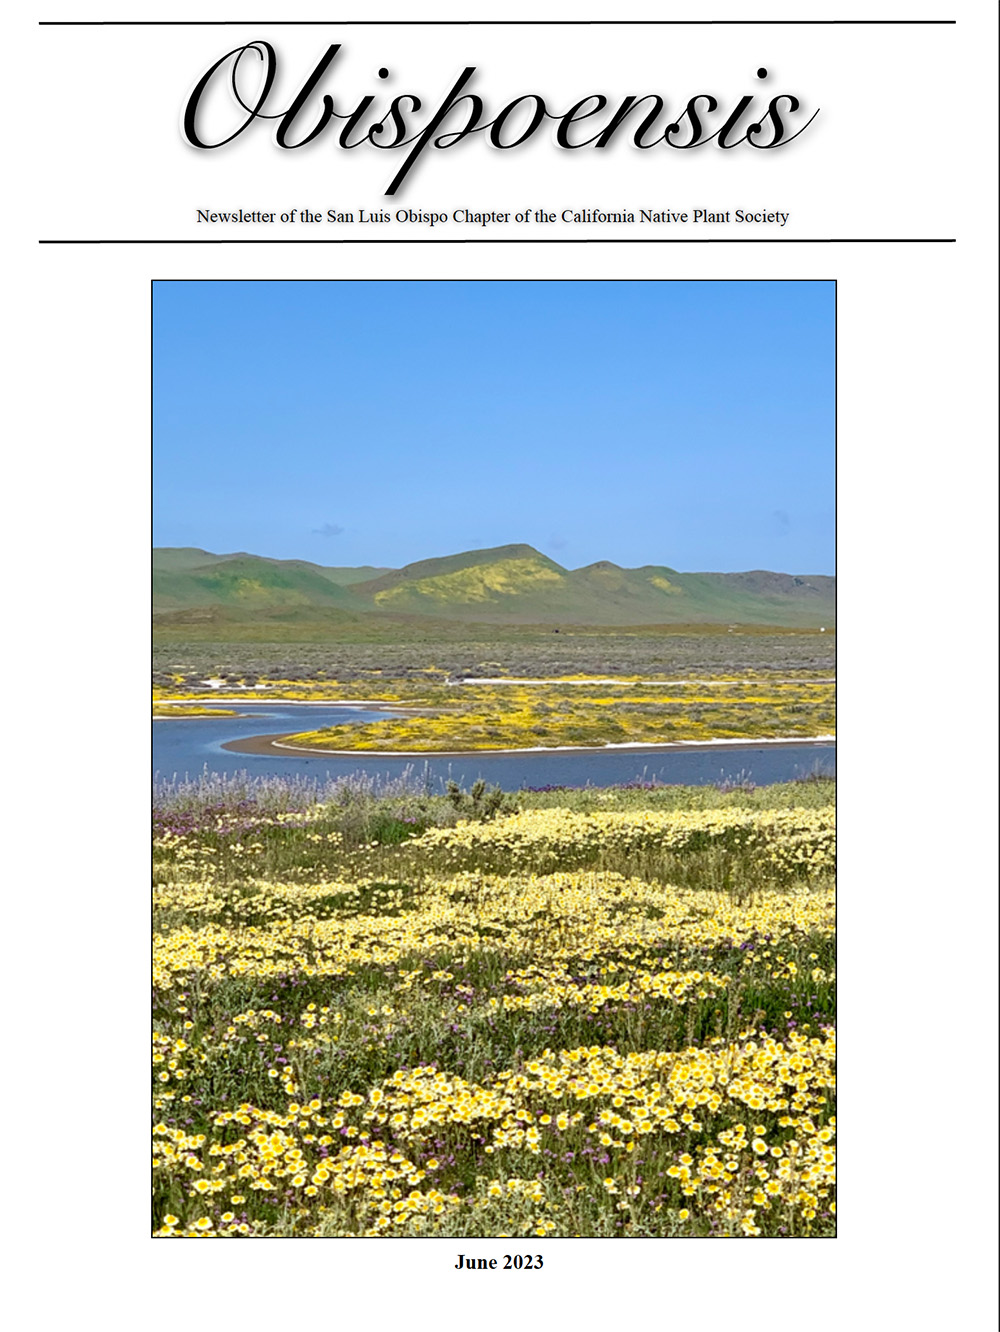 June 2023 Obispoensis Newsletter California Native Plant Society San Luis Obispo